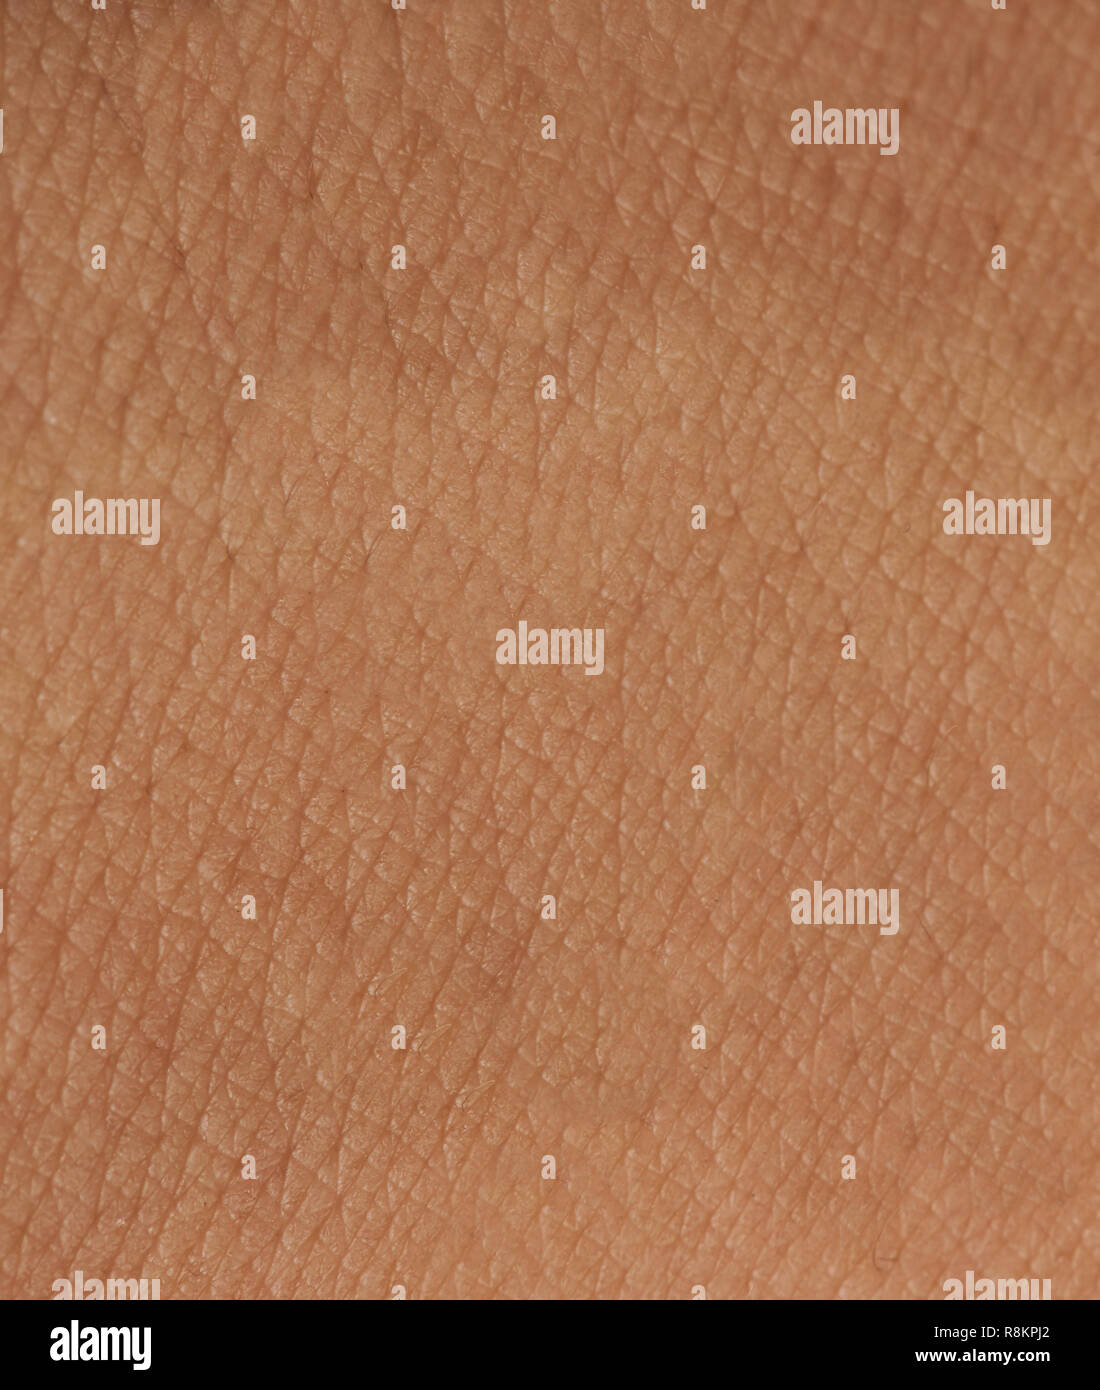 Motif peau sombre avec les cellules et les lignes de texture. Close up of the surface de peau Banque D'Images